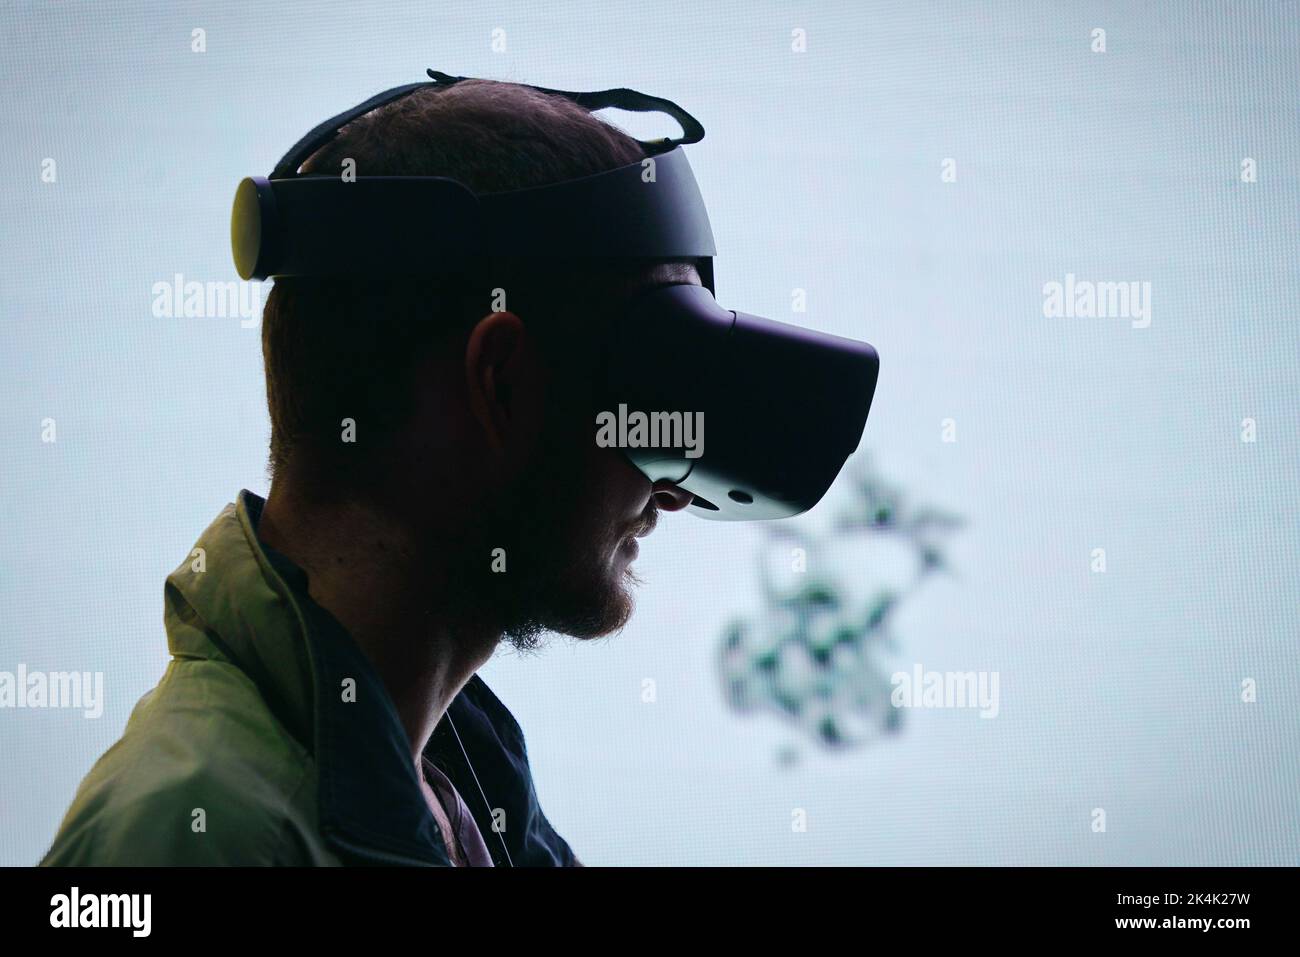 Exposition de réalité virtuelle. Le jeune homme porte des lunettes de réalité virtuelle fait l'expérience d'une rencontre métaverse. Turin, Italie - septembre 2022 Banque D'Images